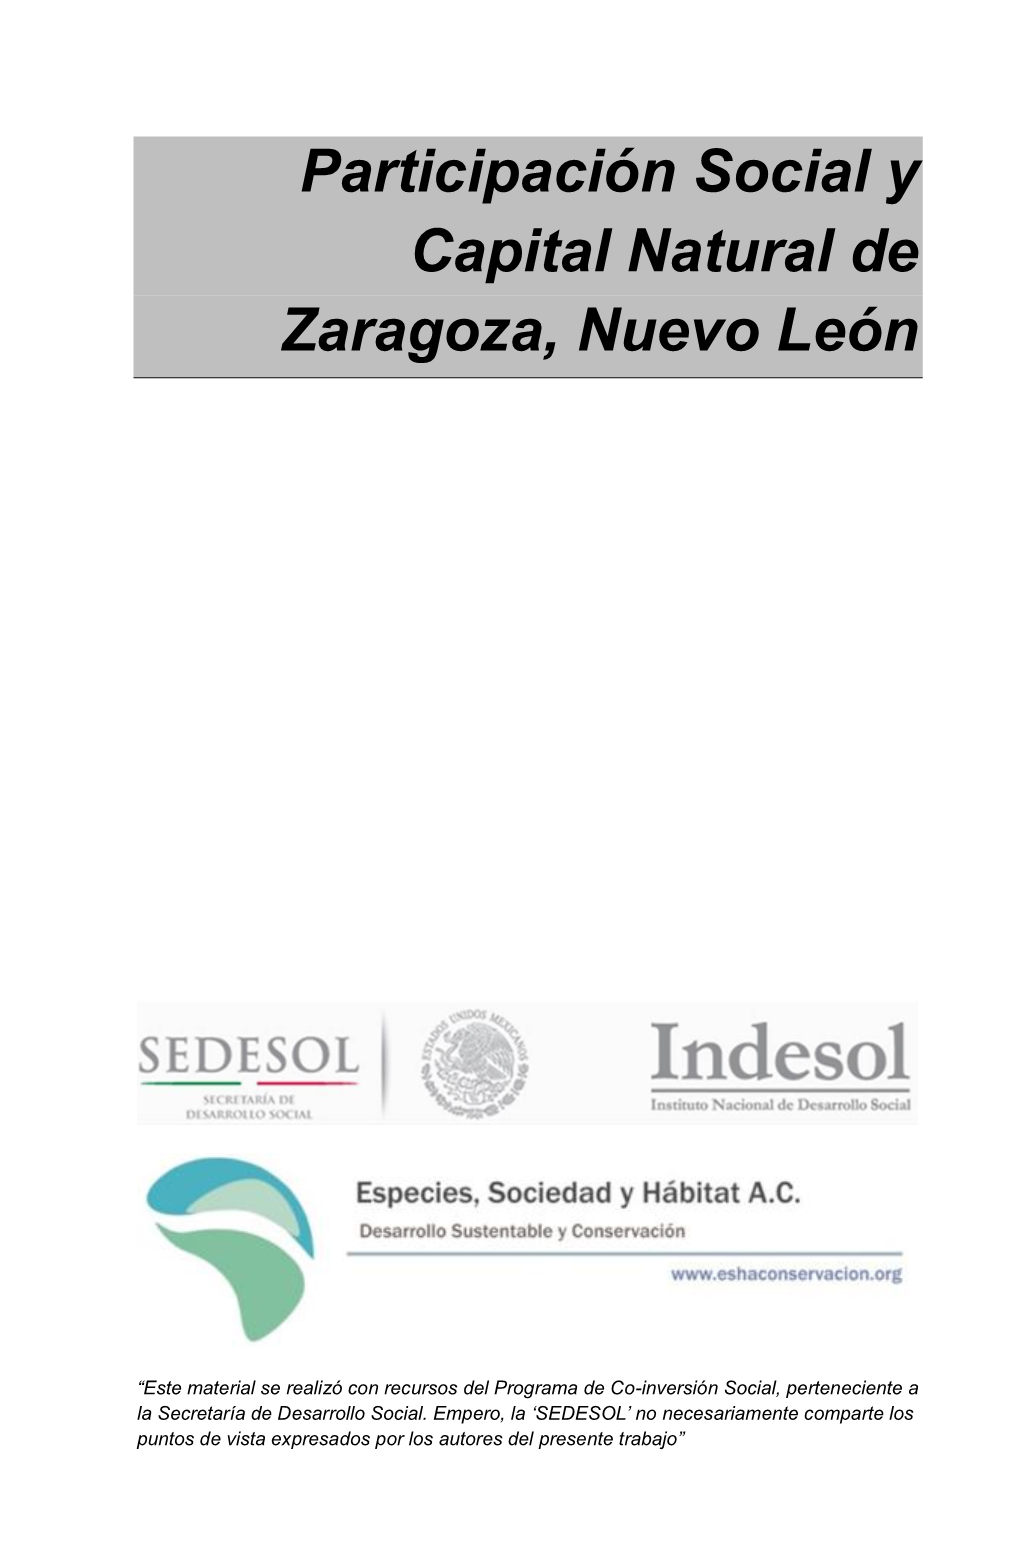 Participación Social Y Capital Natural De Zaragoza, Nuevo León